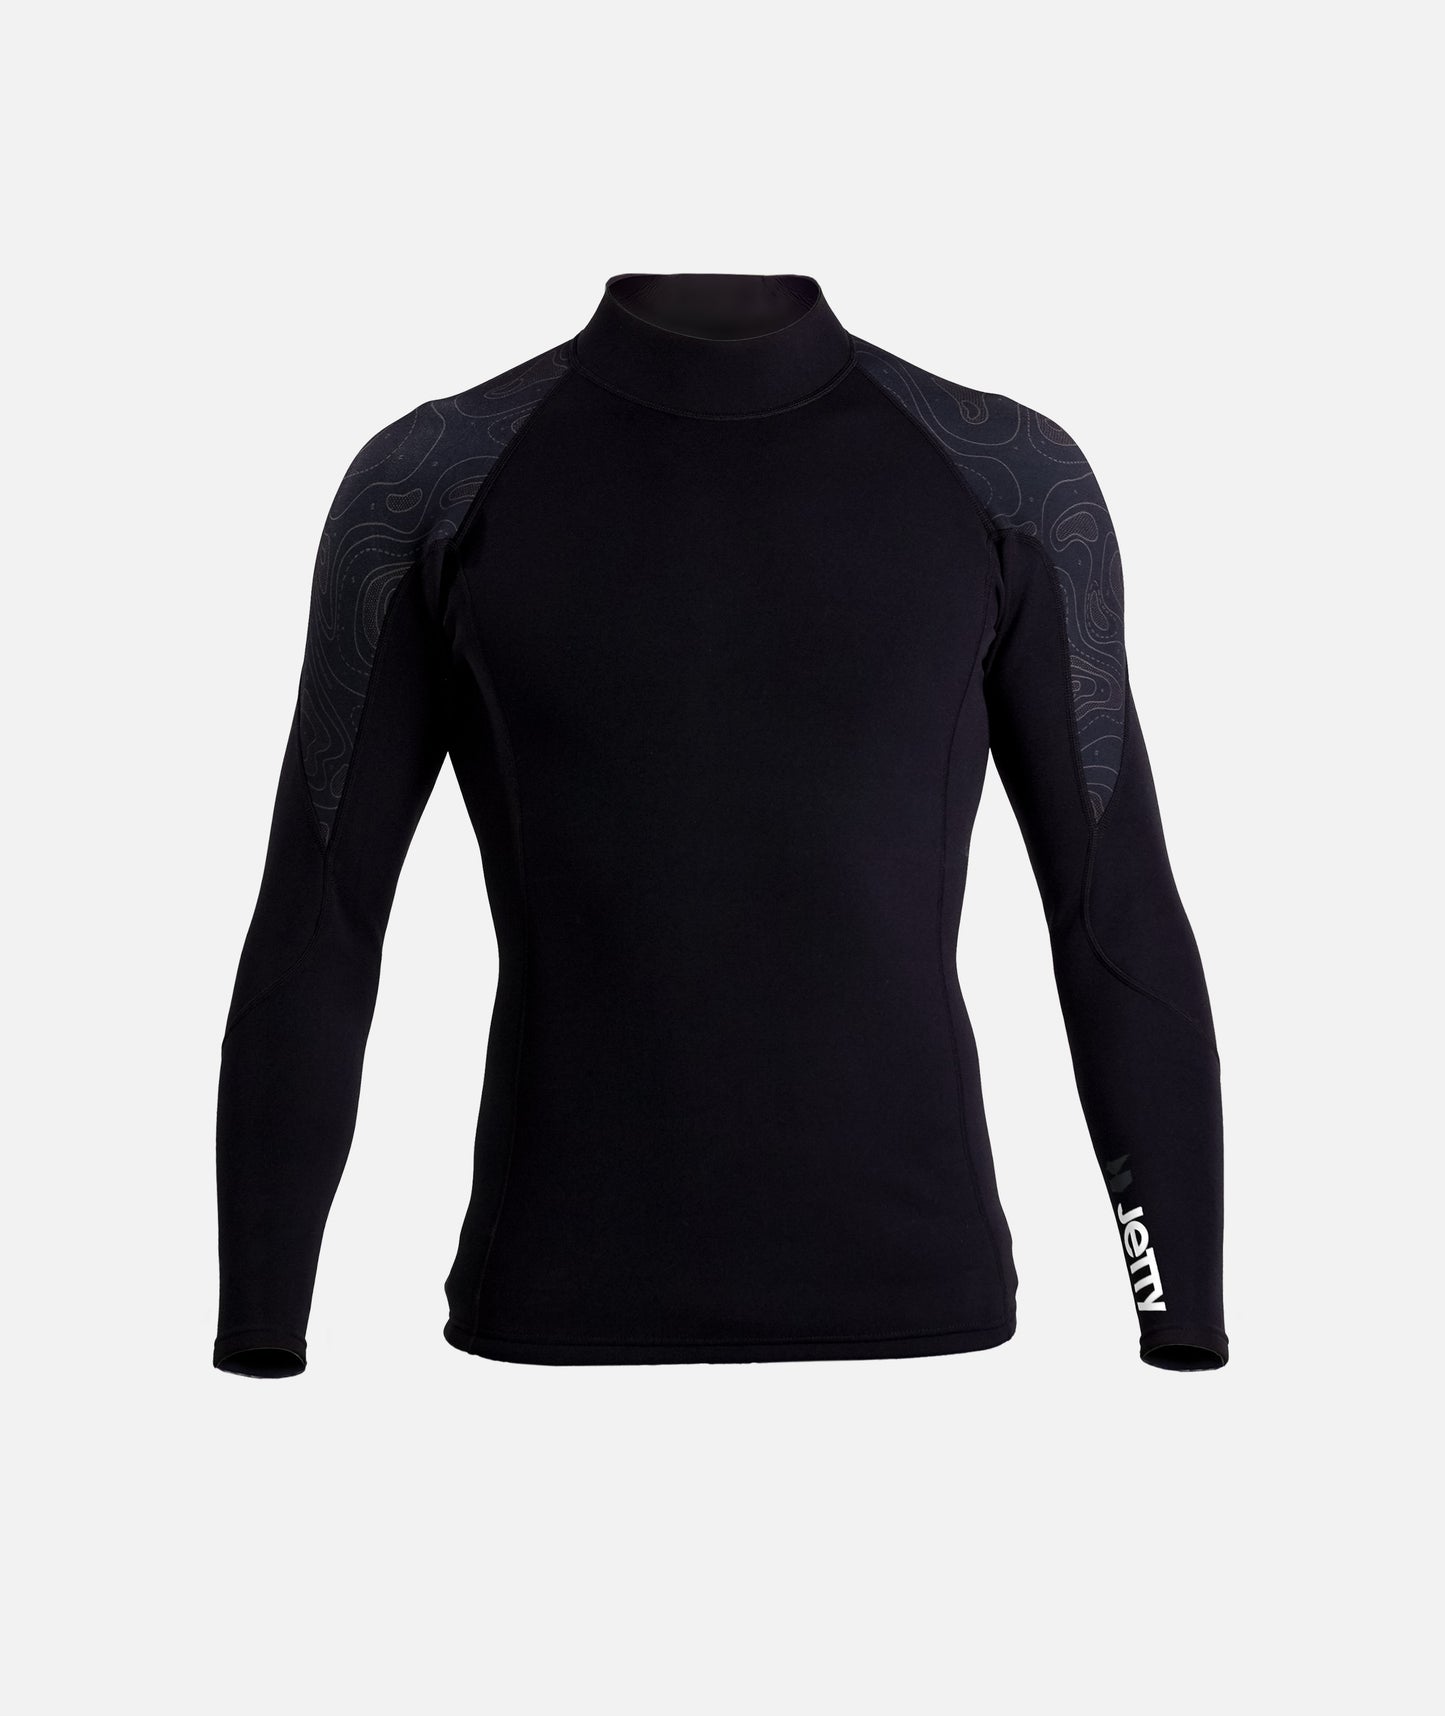 Long Sleeve Wetsuit Top - Black